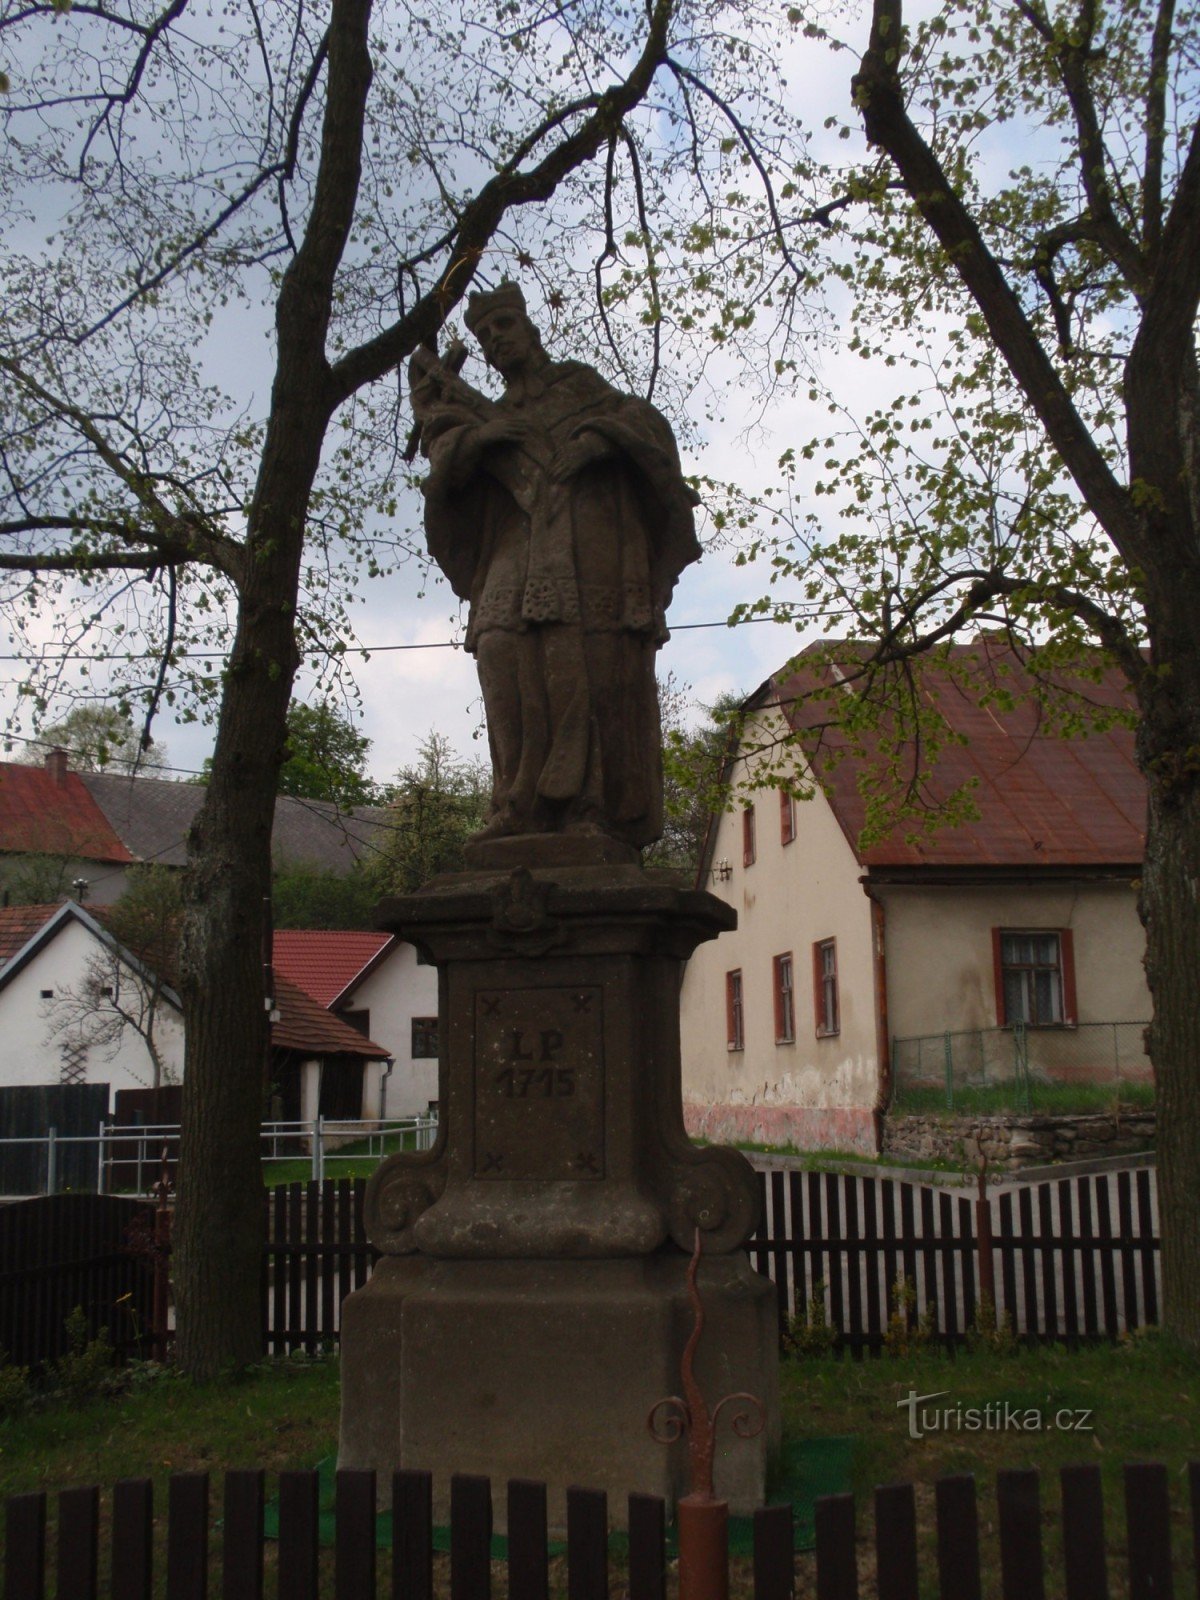 Statuia Sf. Jan Nepomucký în Netín